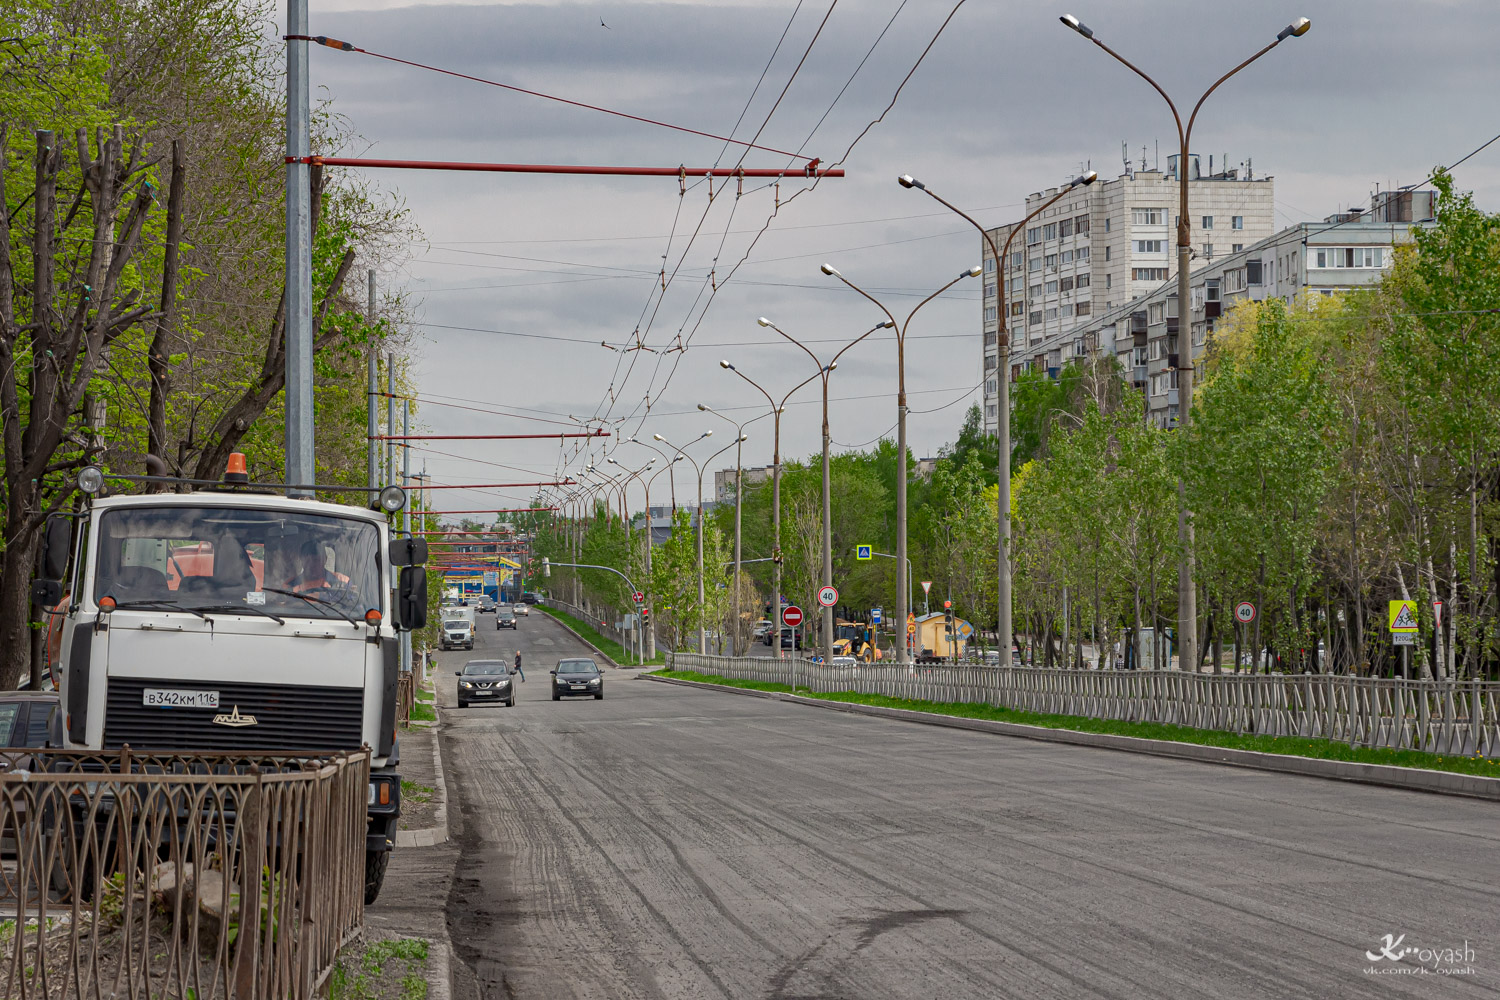 Казань — Строительство  и реконструкция троллейбусных линий